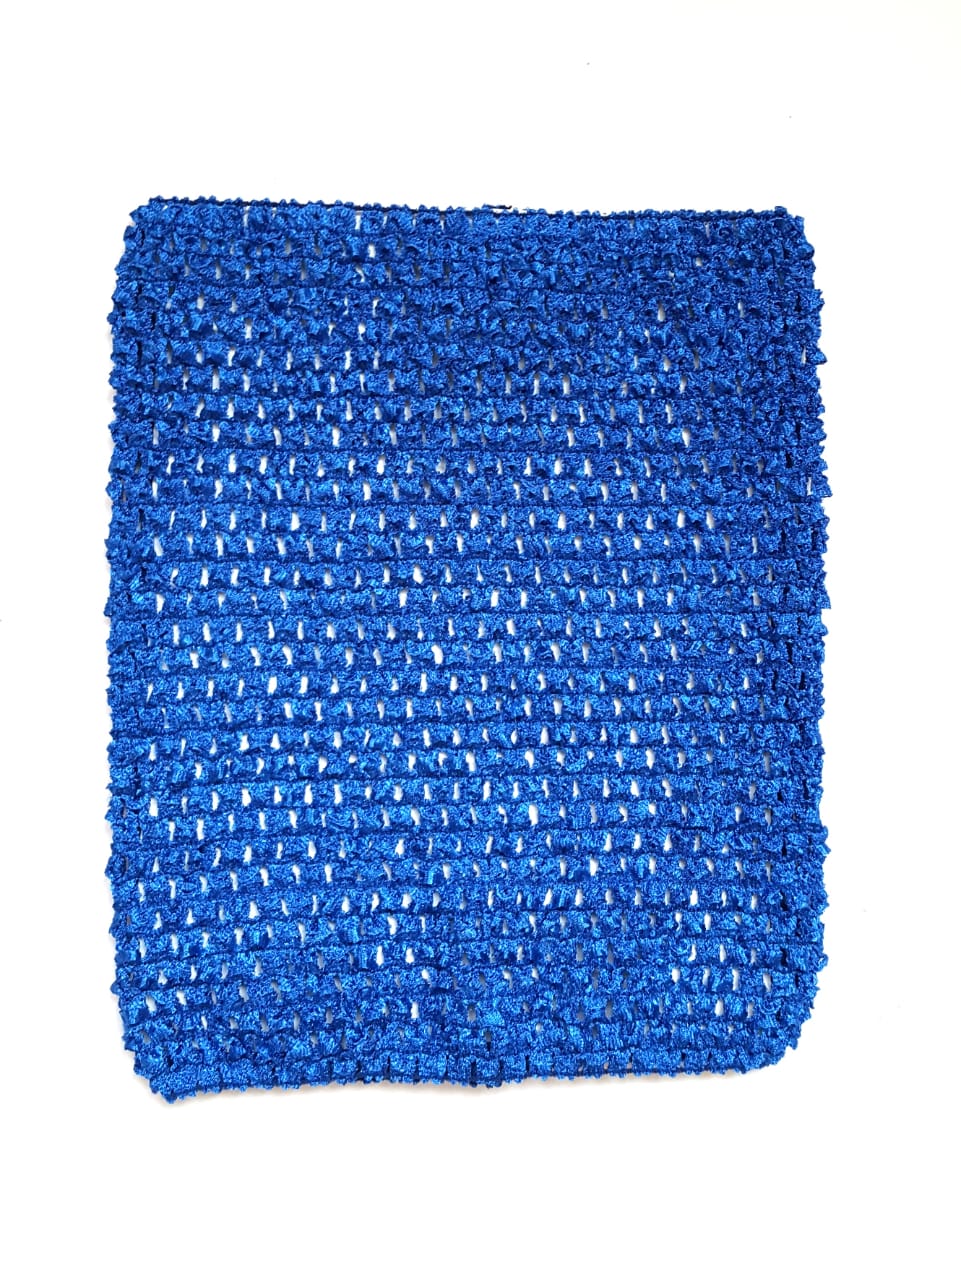 Ткань Caramelkalife Топ-резинка, размер 23*20 см. Цвет Синий